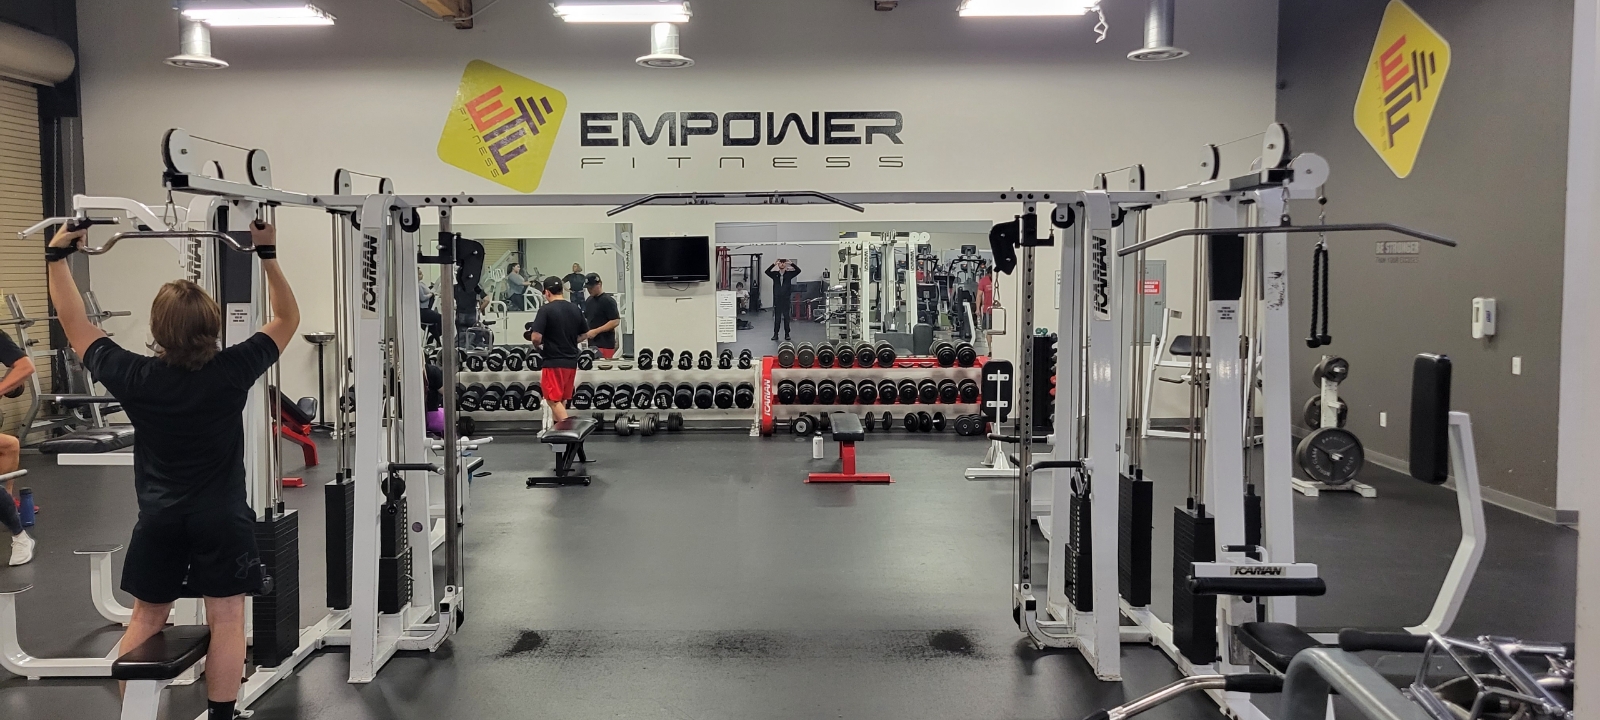 Elko - Empower Fitness